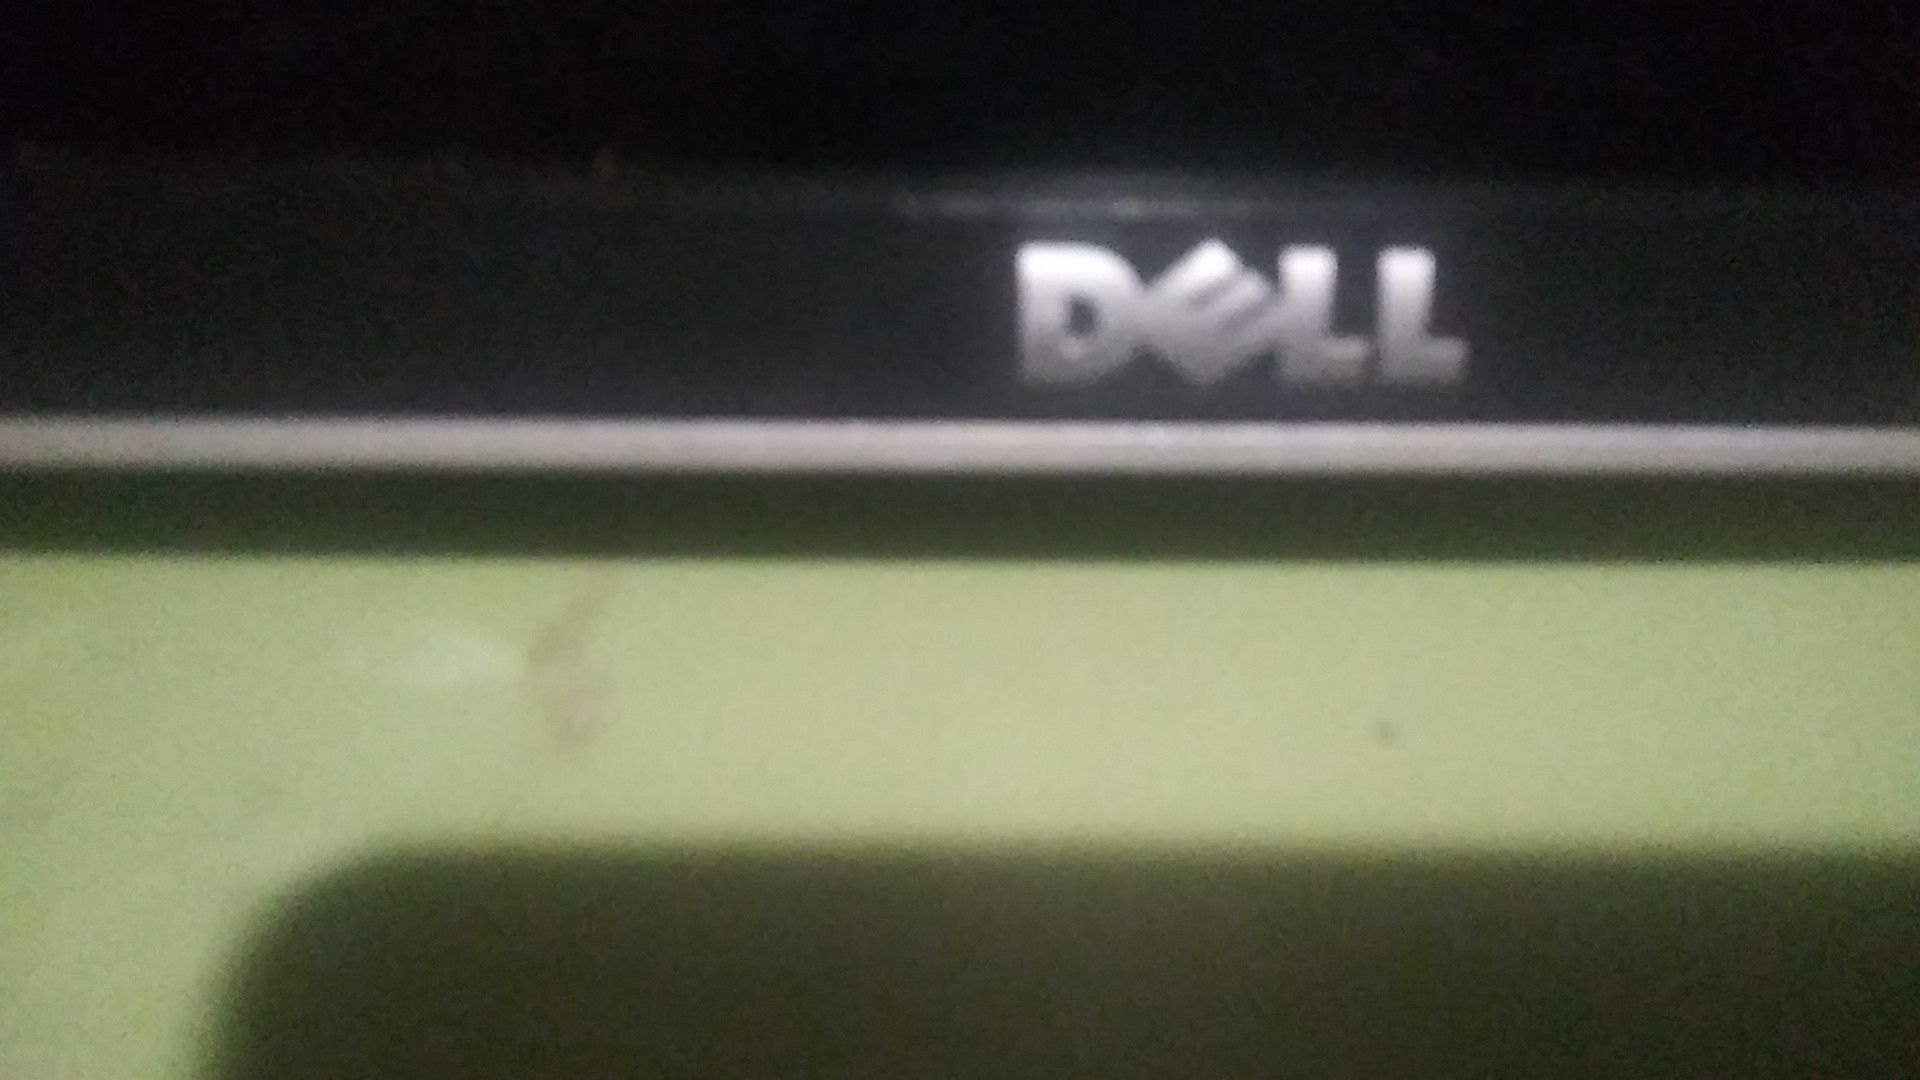 DELL computer monitor